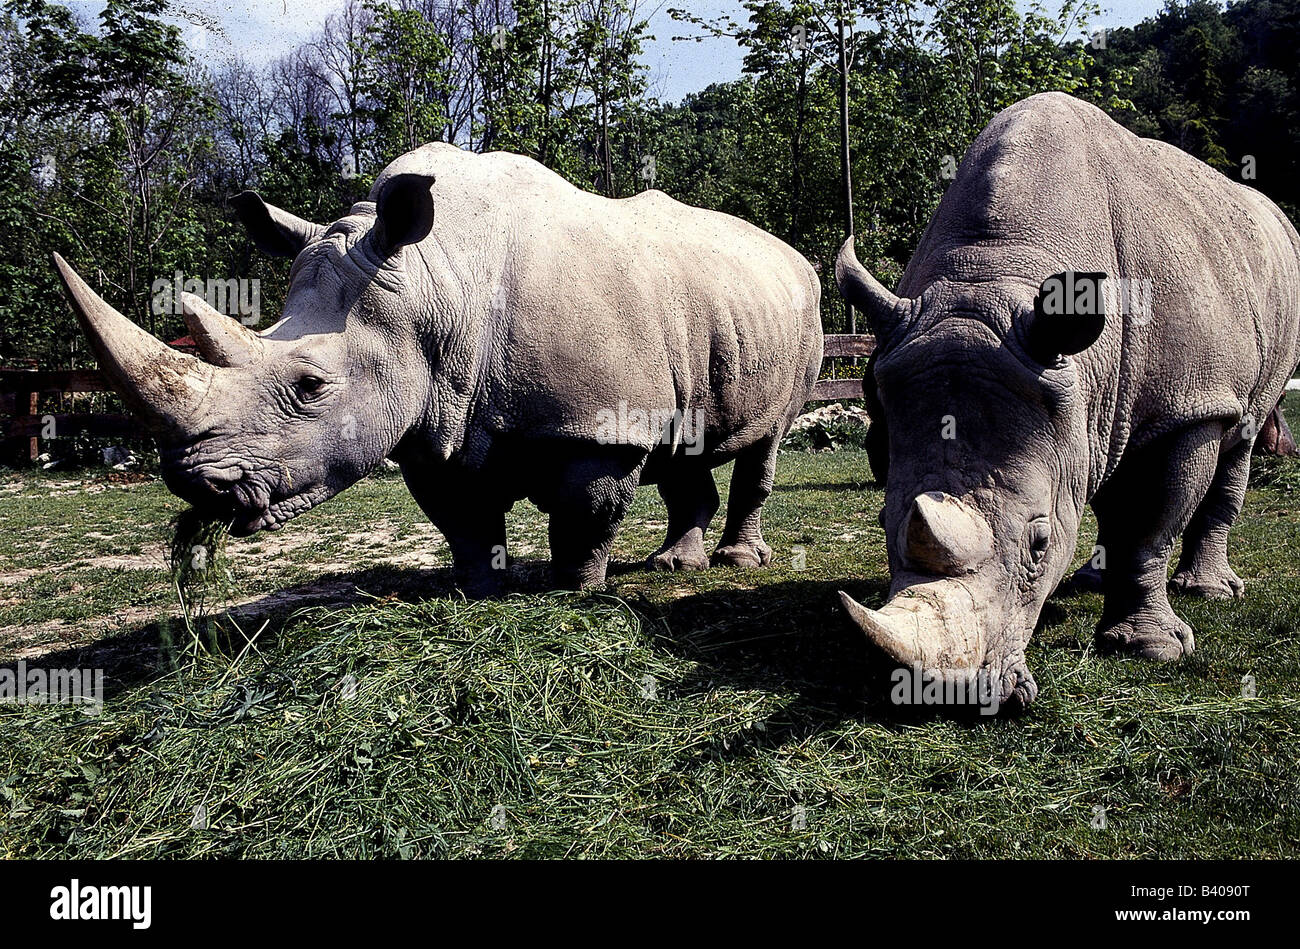 Zoologia, mammifero / di mammifero, Rhinocerotidae, quadrato a labbro rinoceronte (Ceratotherium simum), due animali mangiare, distribuzione: Foto Stock